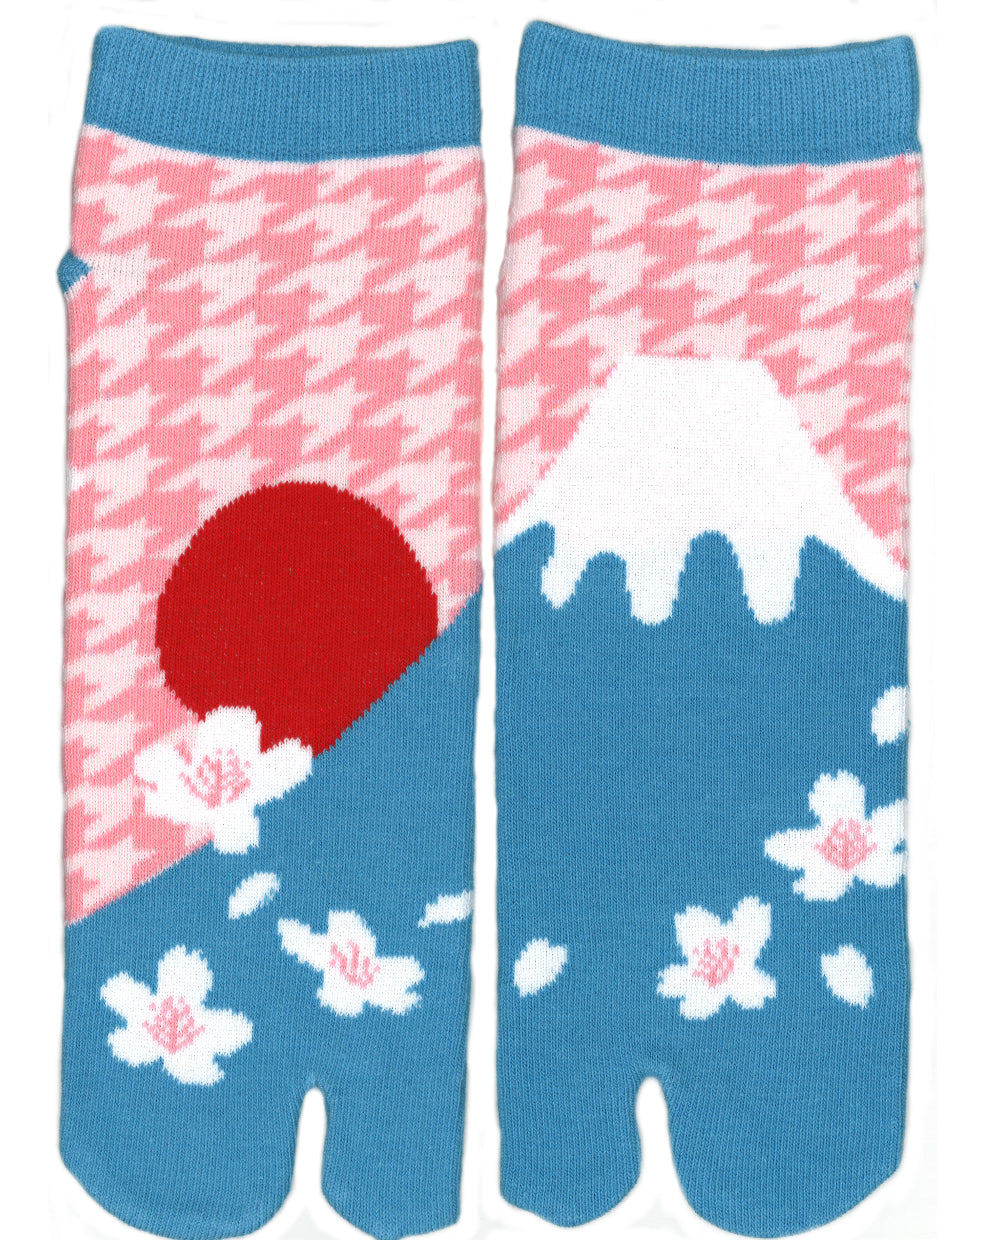 Shinobiya Original Tabi Socks: Mount Fuji